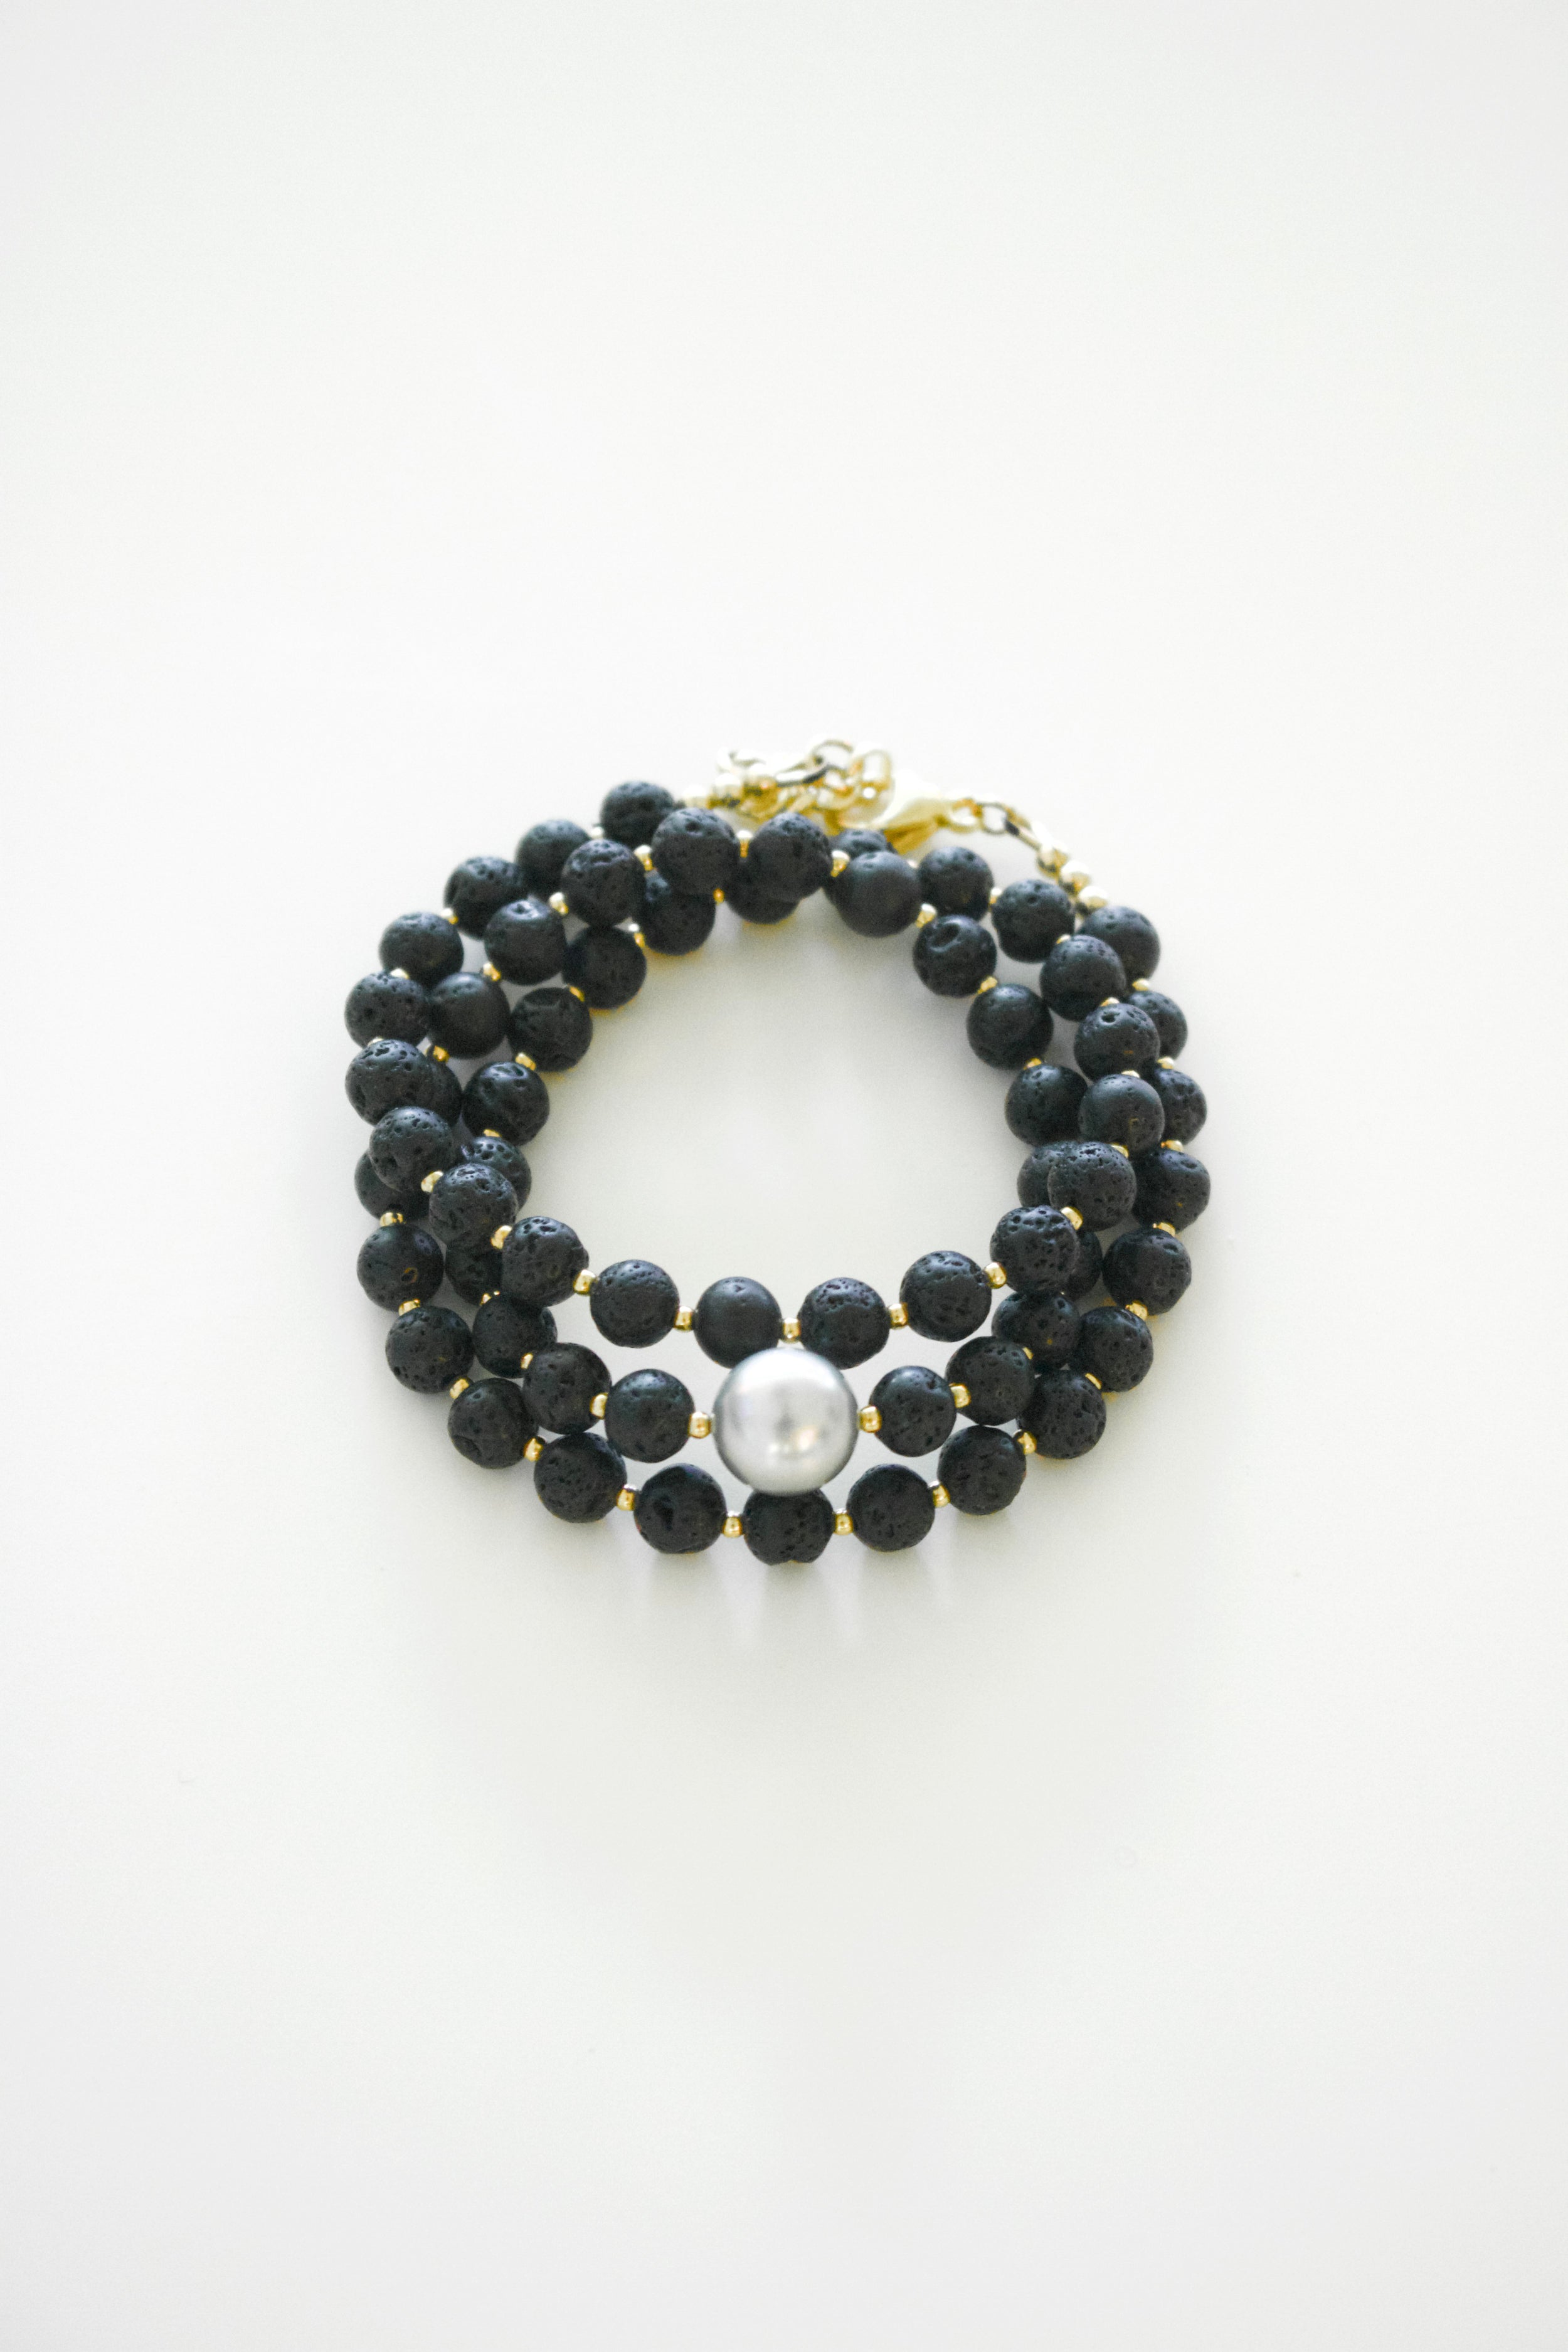 Kona Tahitian Wrap Bracelet / Necklace